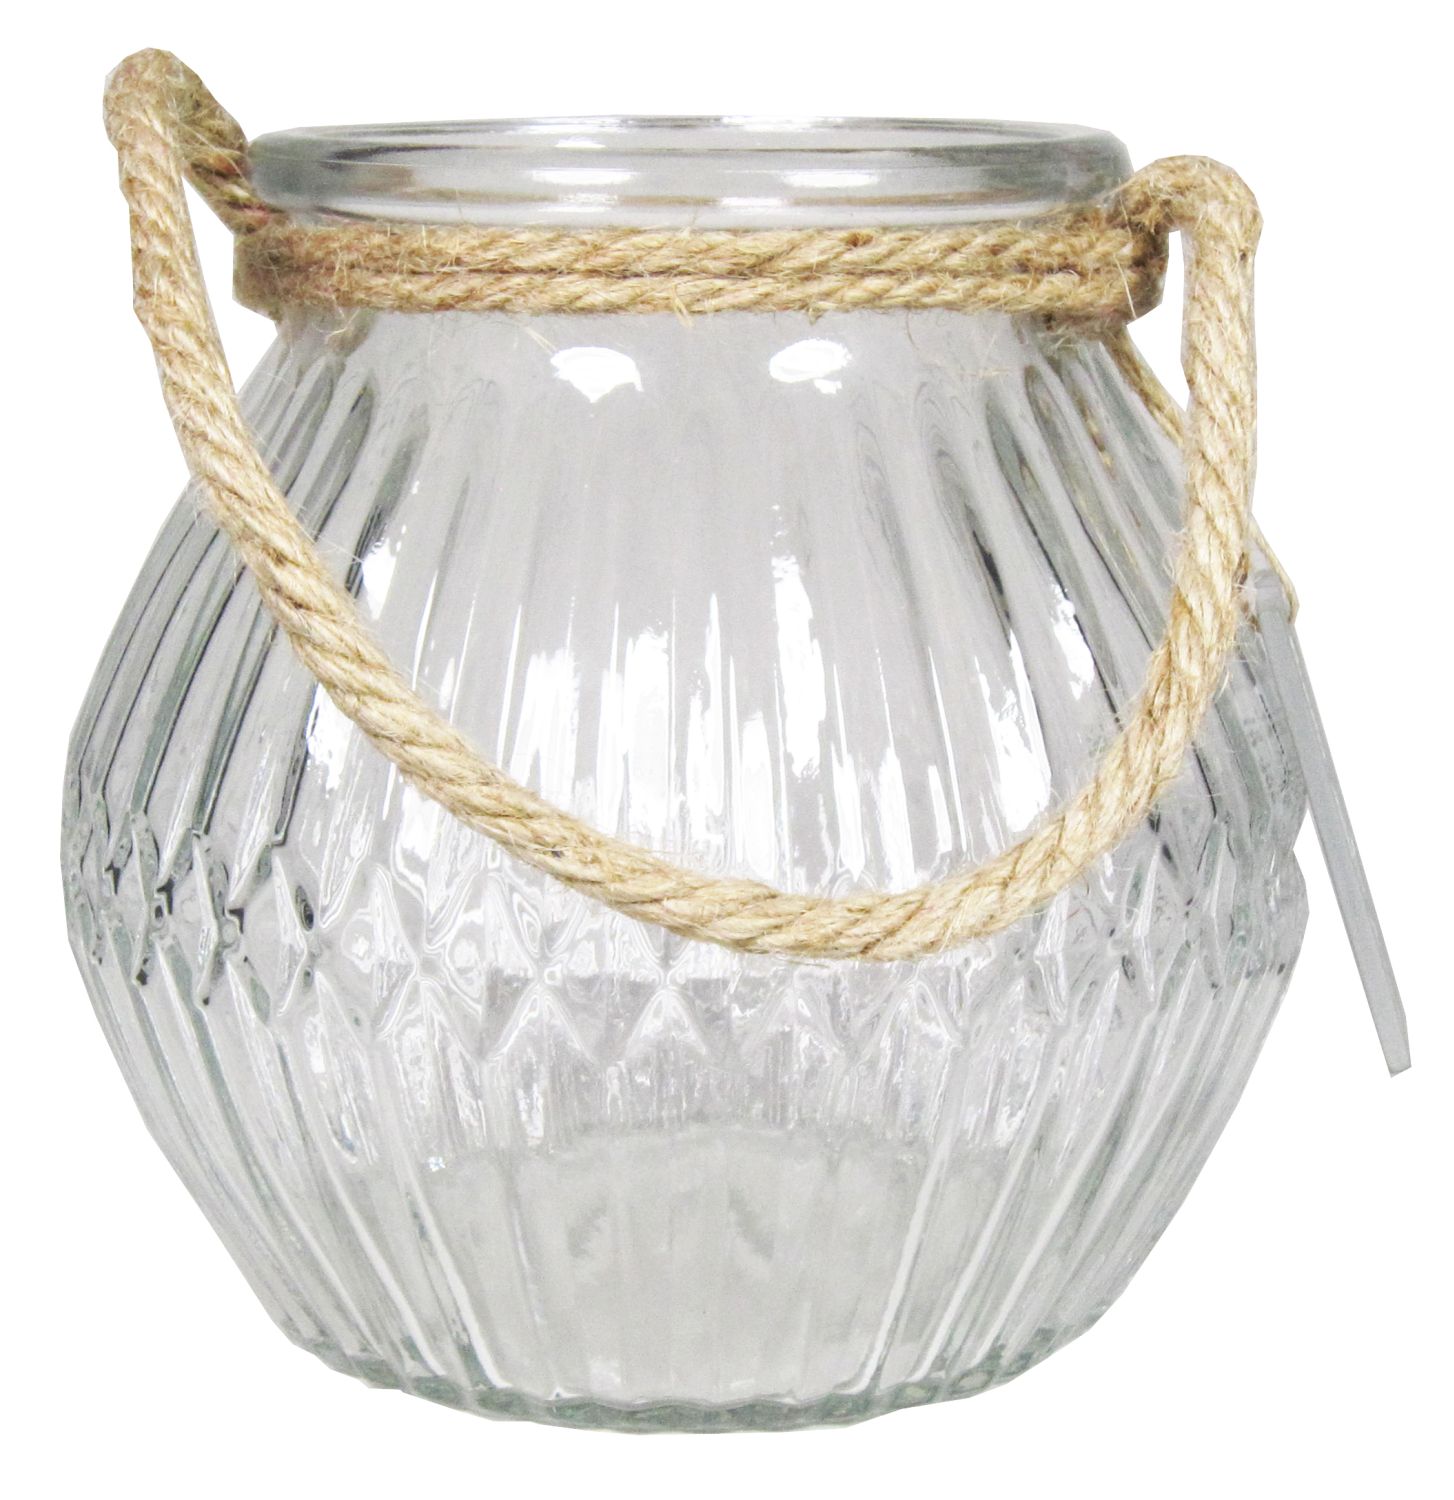 Windlicht Glas AFENI mit Henkel, Rautenmuster, klar, 10,5cm, Ø12cm | Windlichter